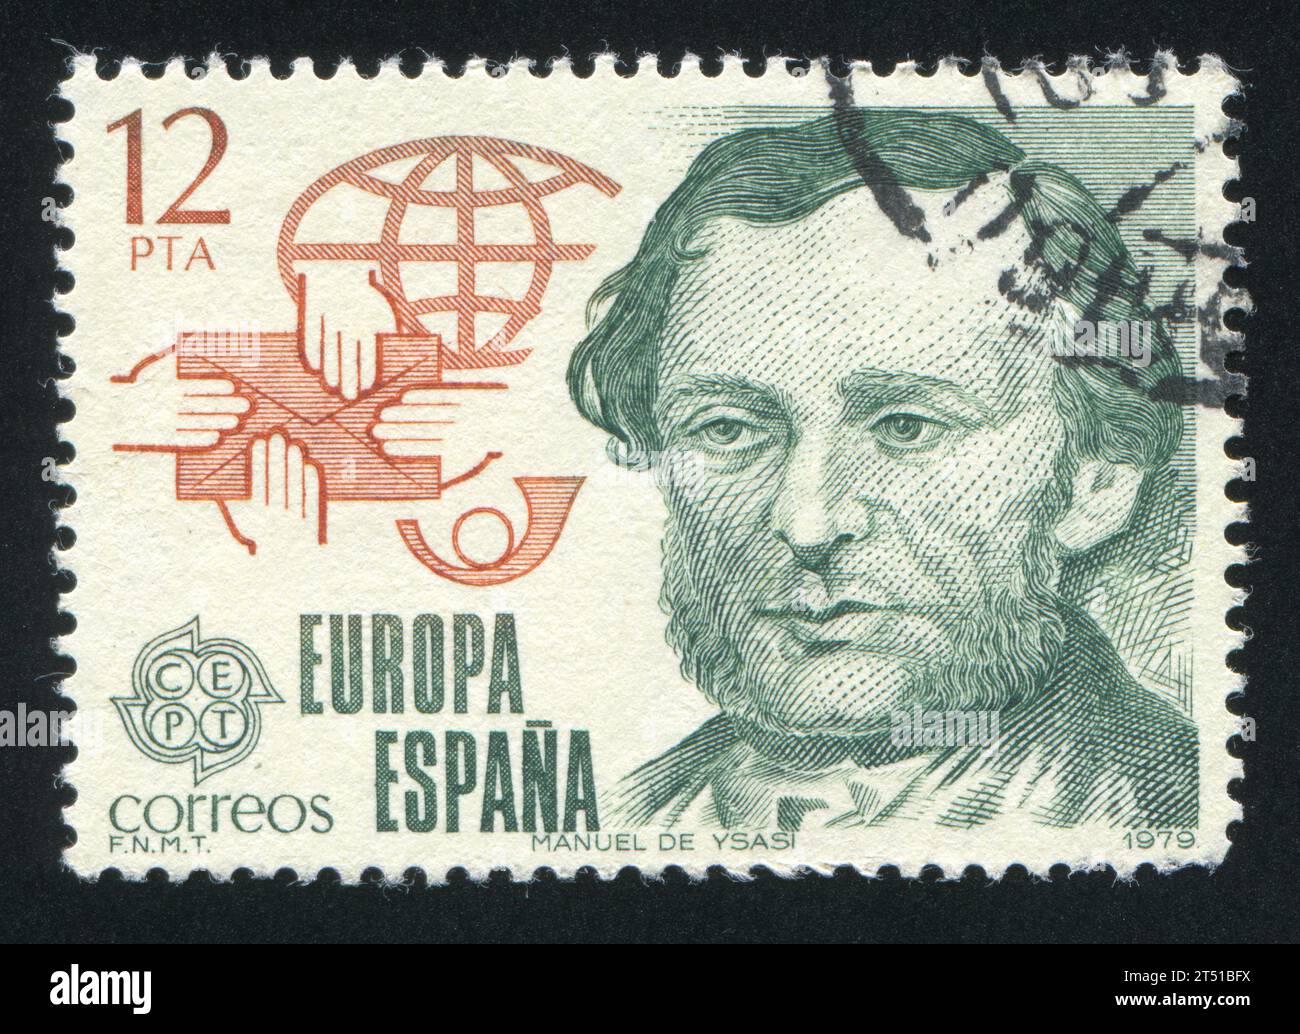 SPANIEN - CA. 1979: Briefmarke von Spanien, zeigt Postreformer Manuel Ysasi, ca. 1979 Stockfoto